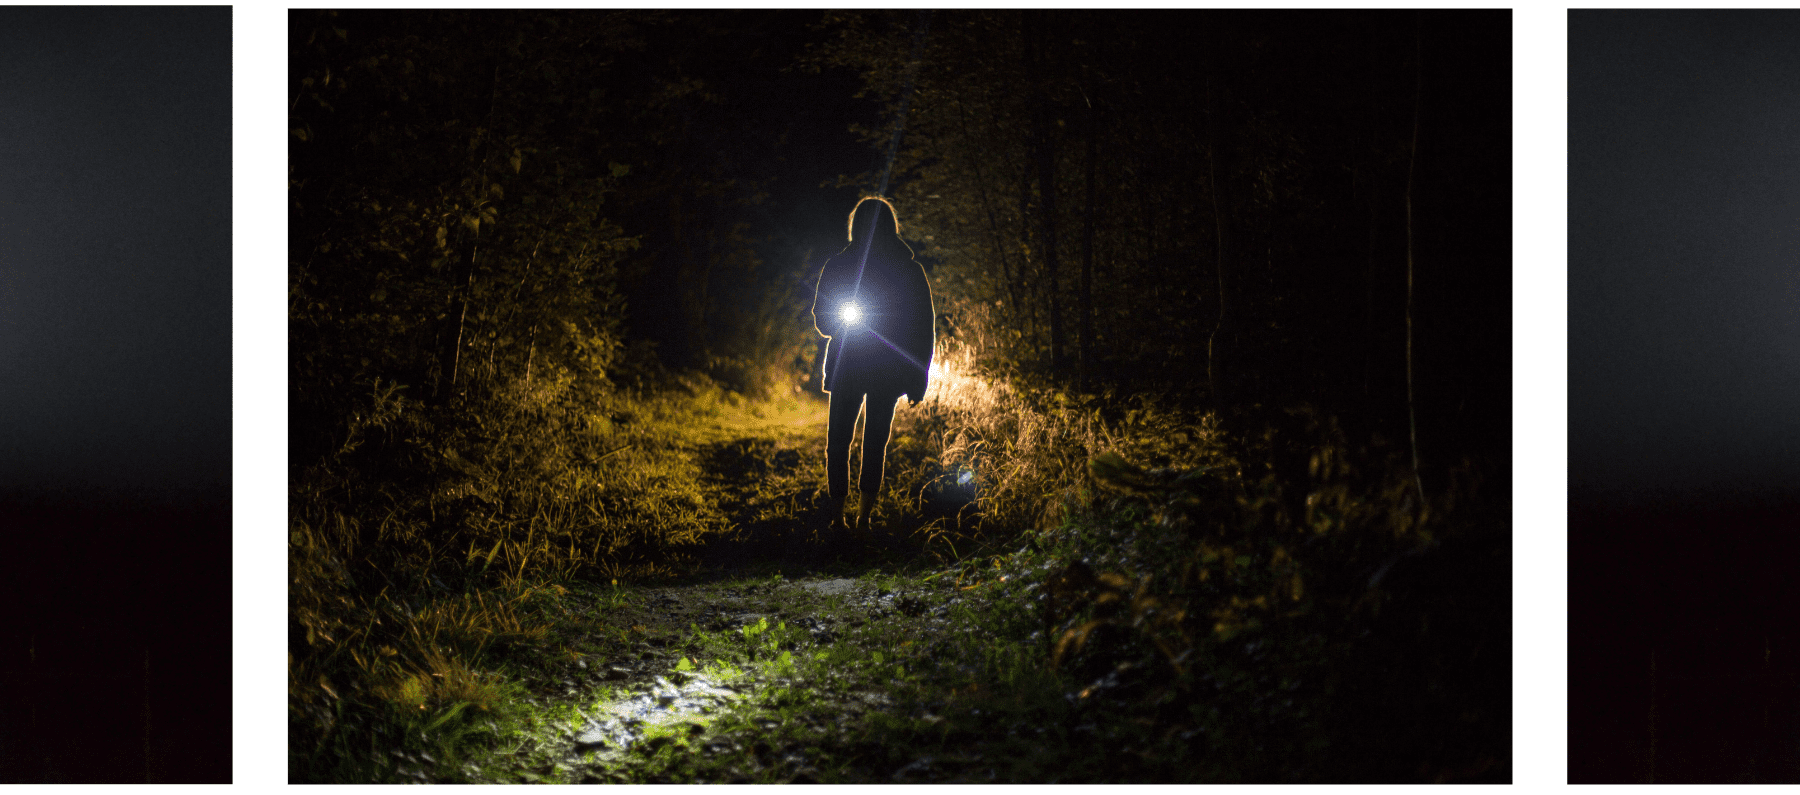 אדם מחזיק פנס יד במהלך הלילה, על מנת להאיר את הדרך בטיול בשטח